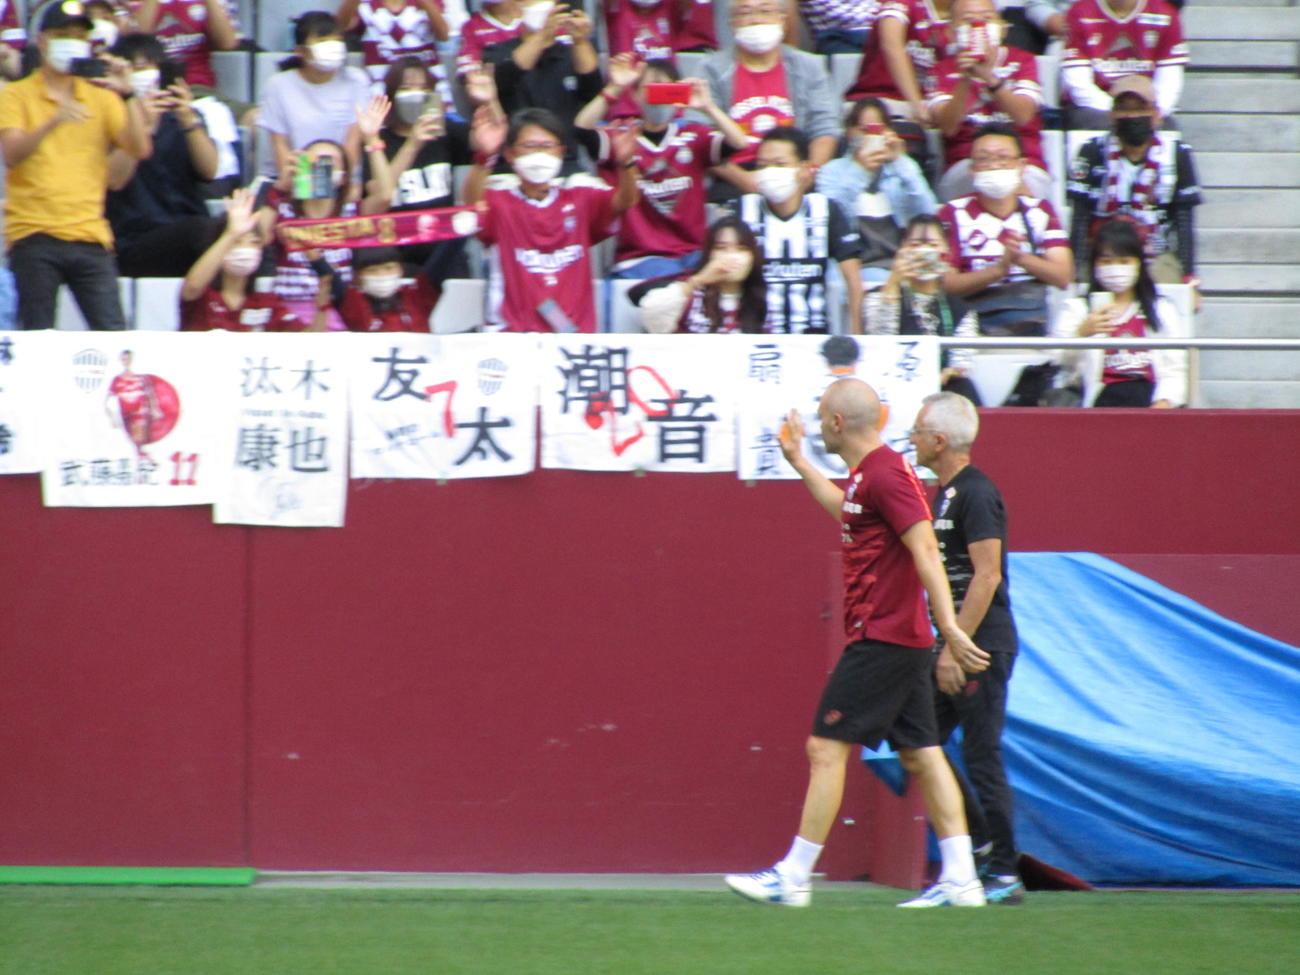 一般公開された練習で神戸イニエスタは会場の観客に手を振る